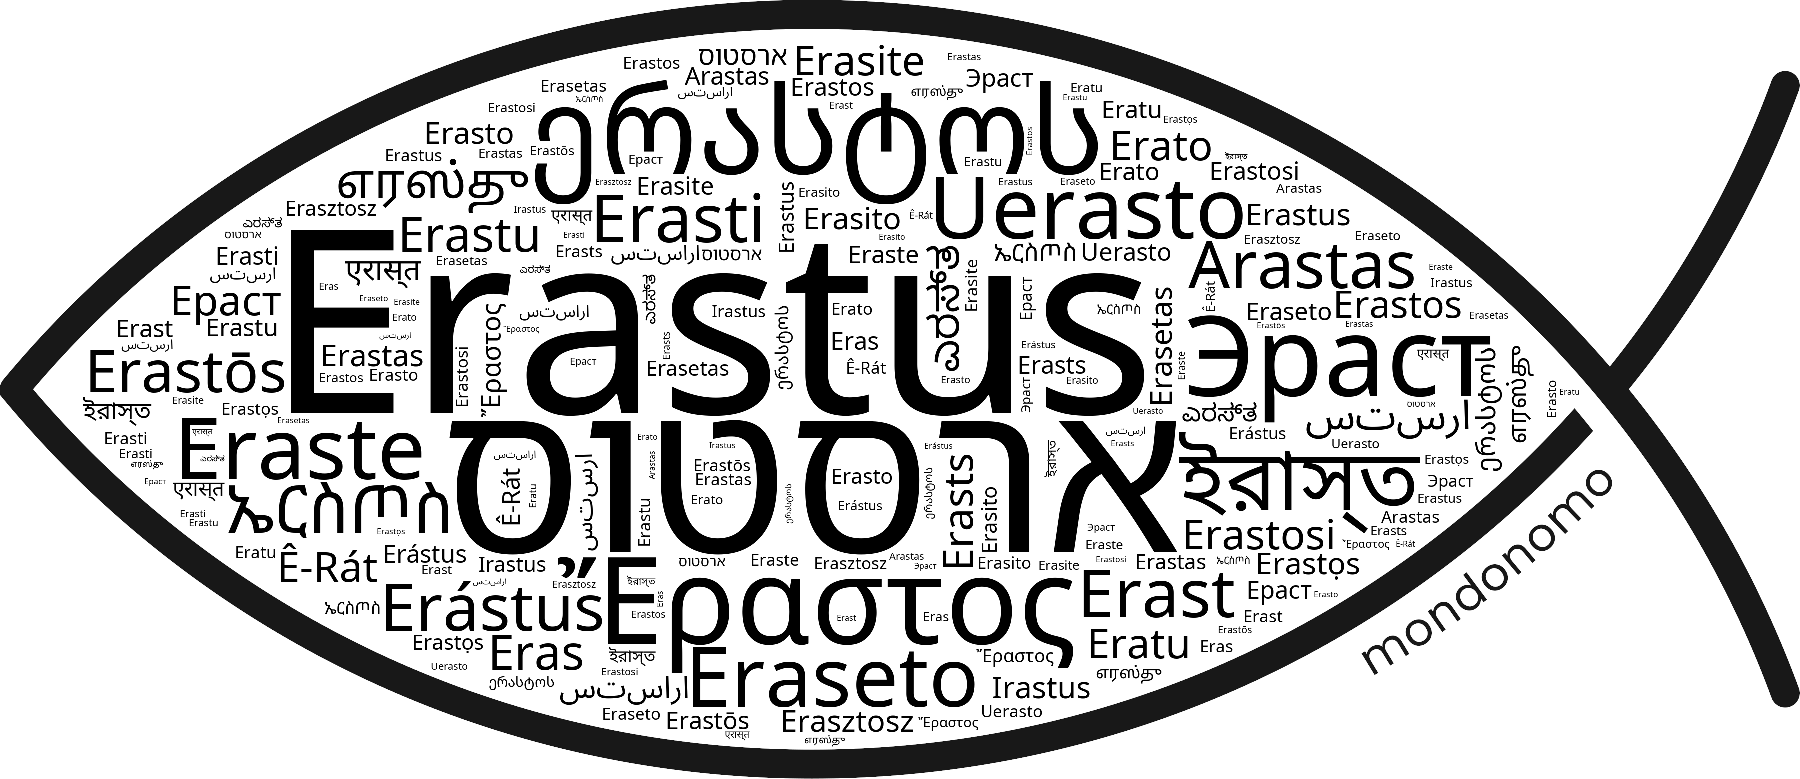 Name Erastus in the world's Bibles